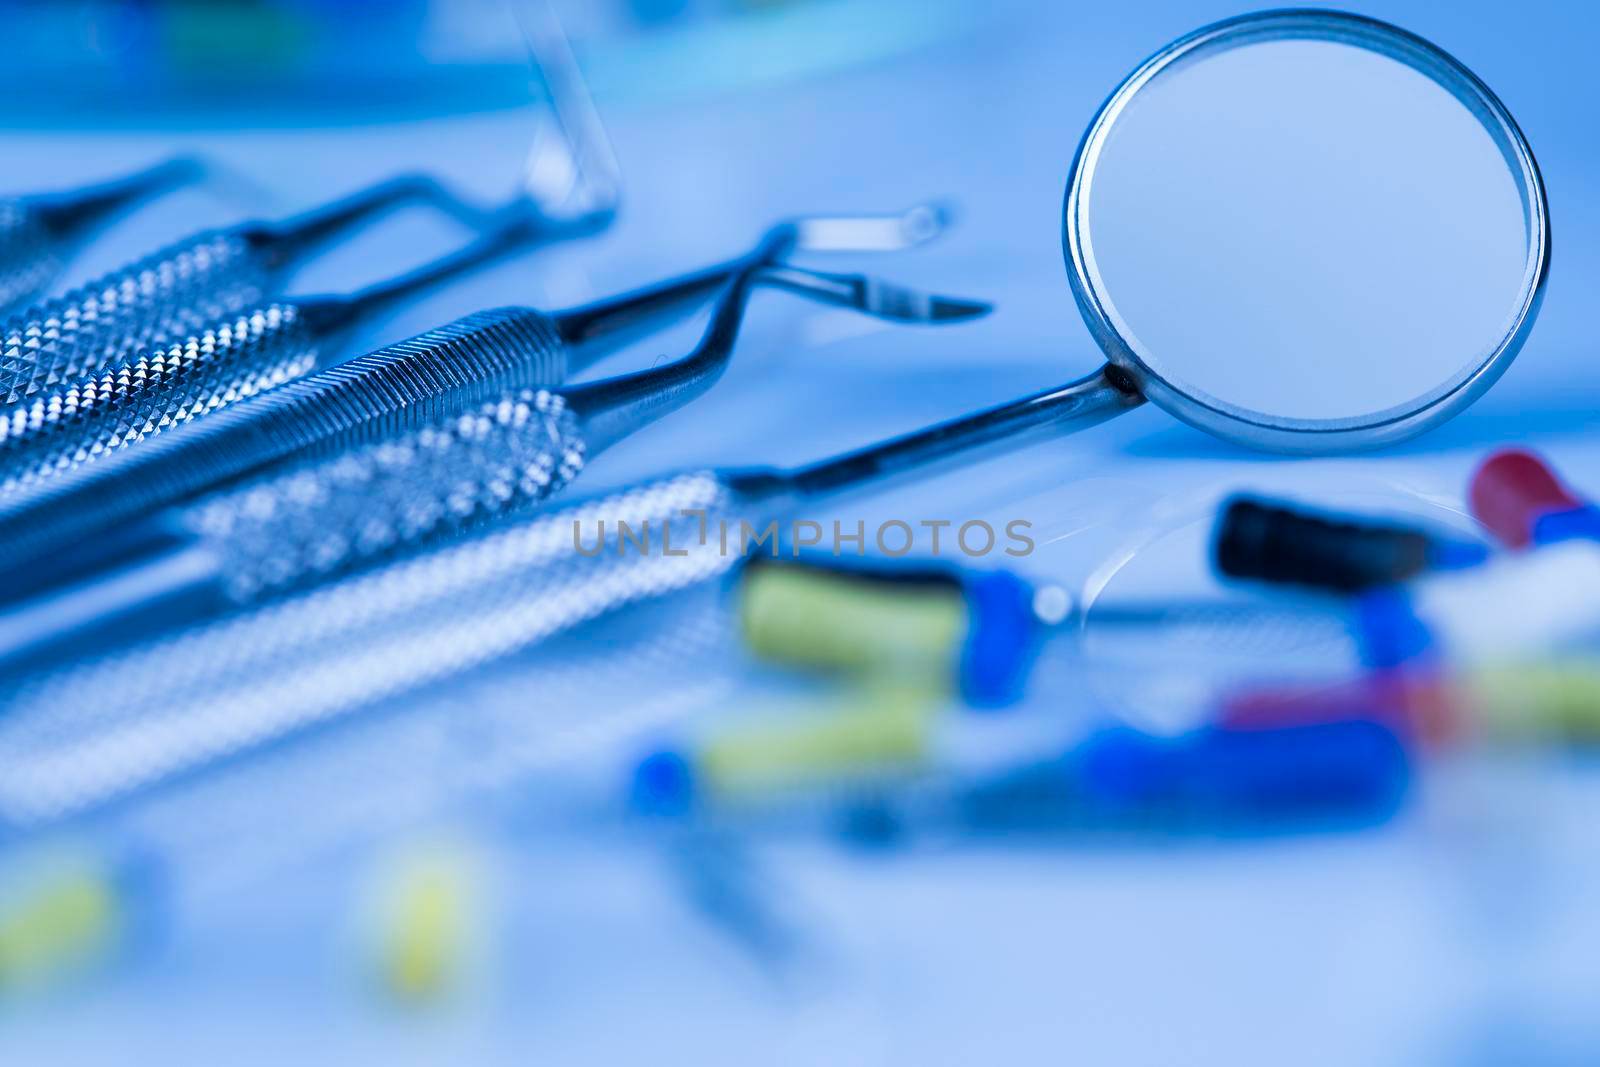 Set of dental instruments, health care